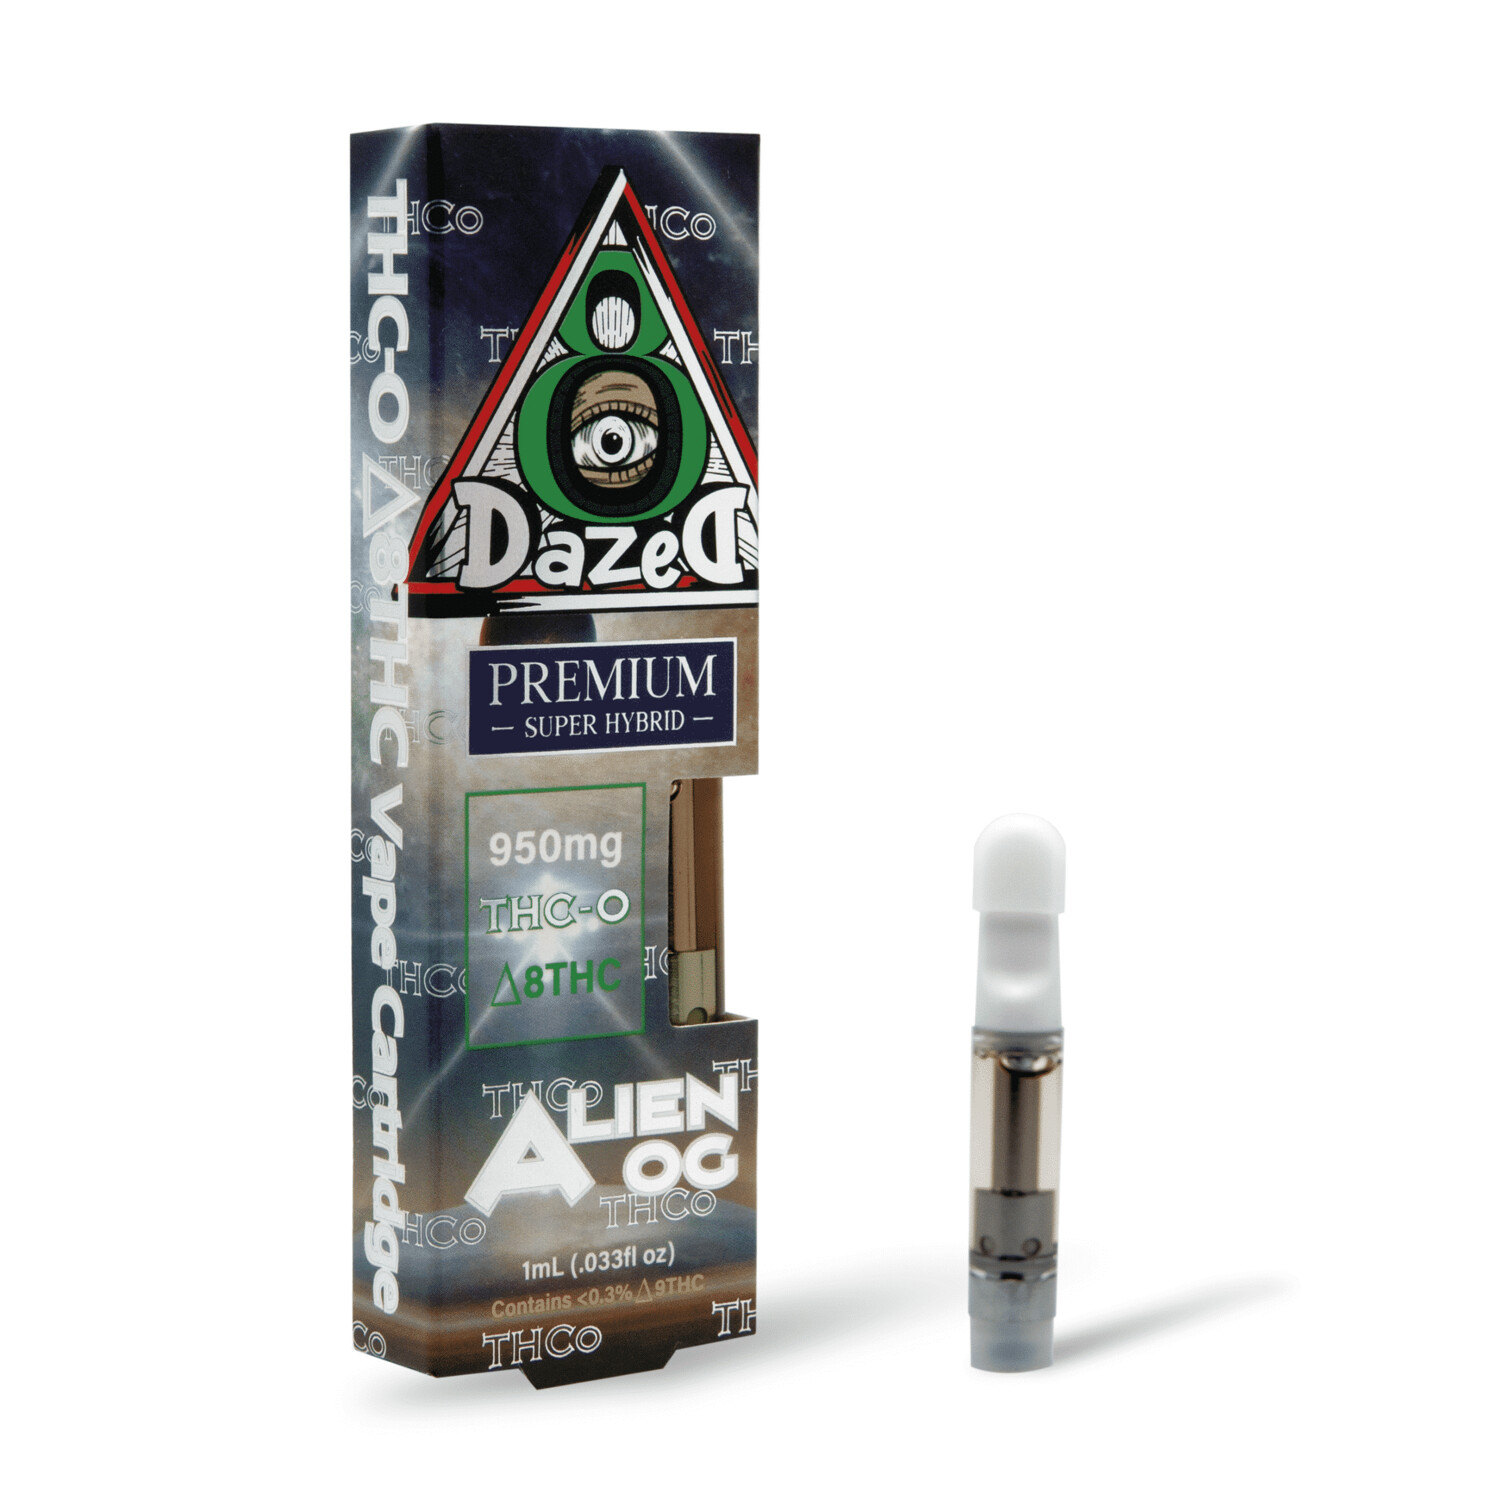 Dazed8 Delta 8 THC-O Cartridge (1G)